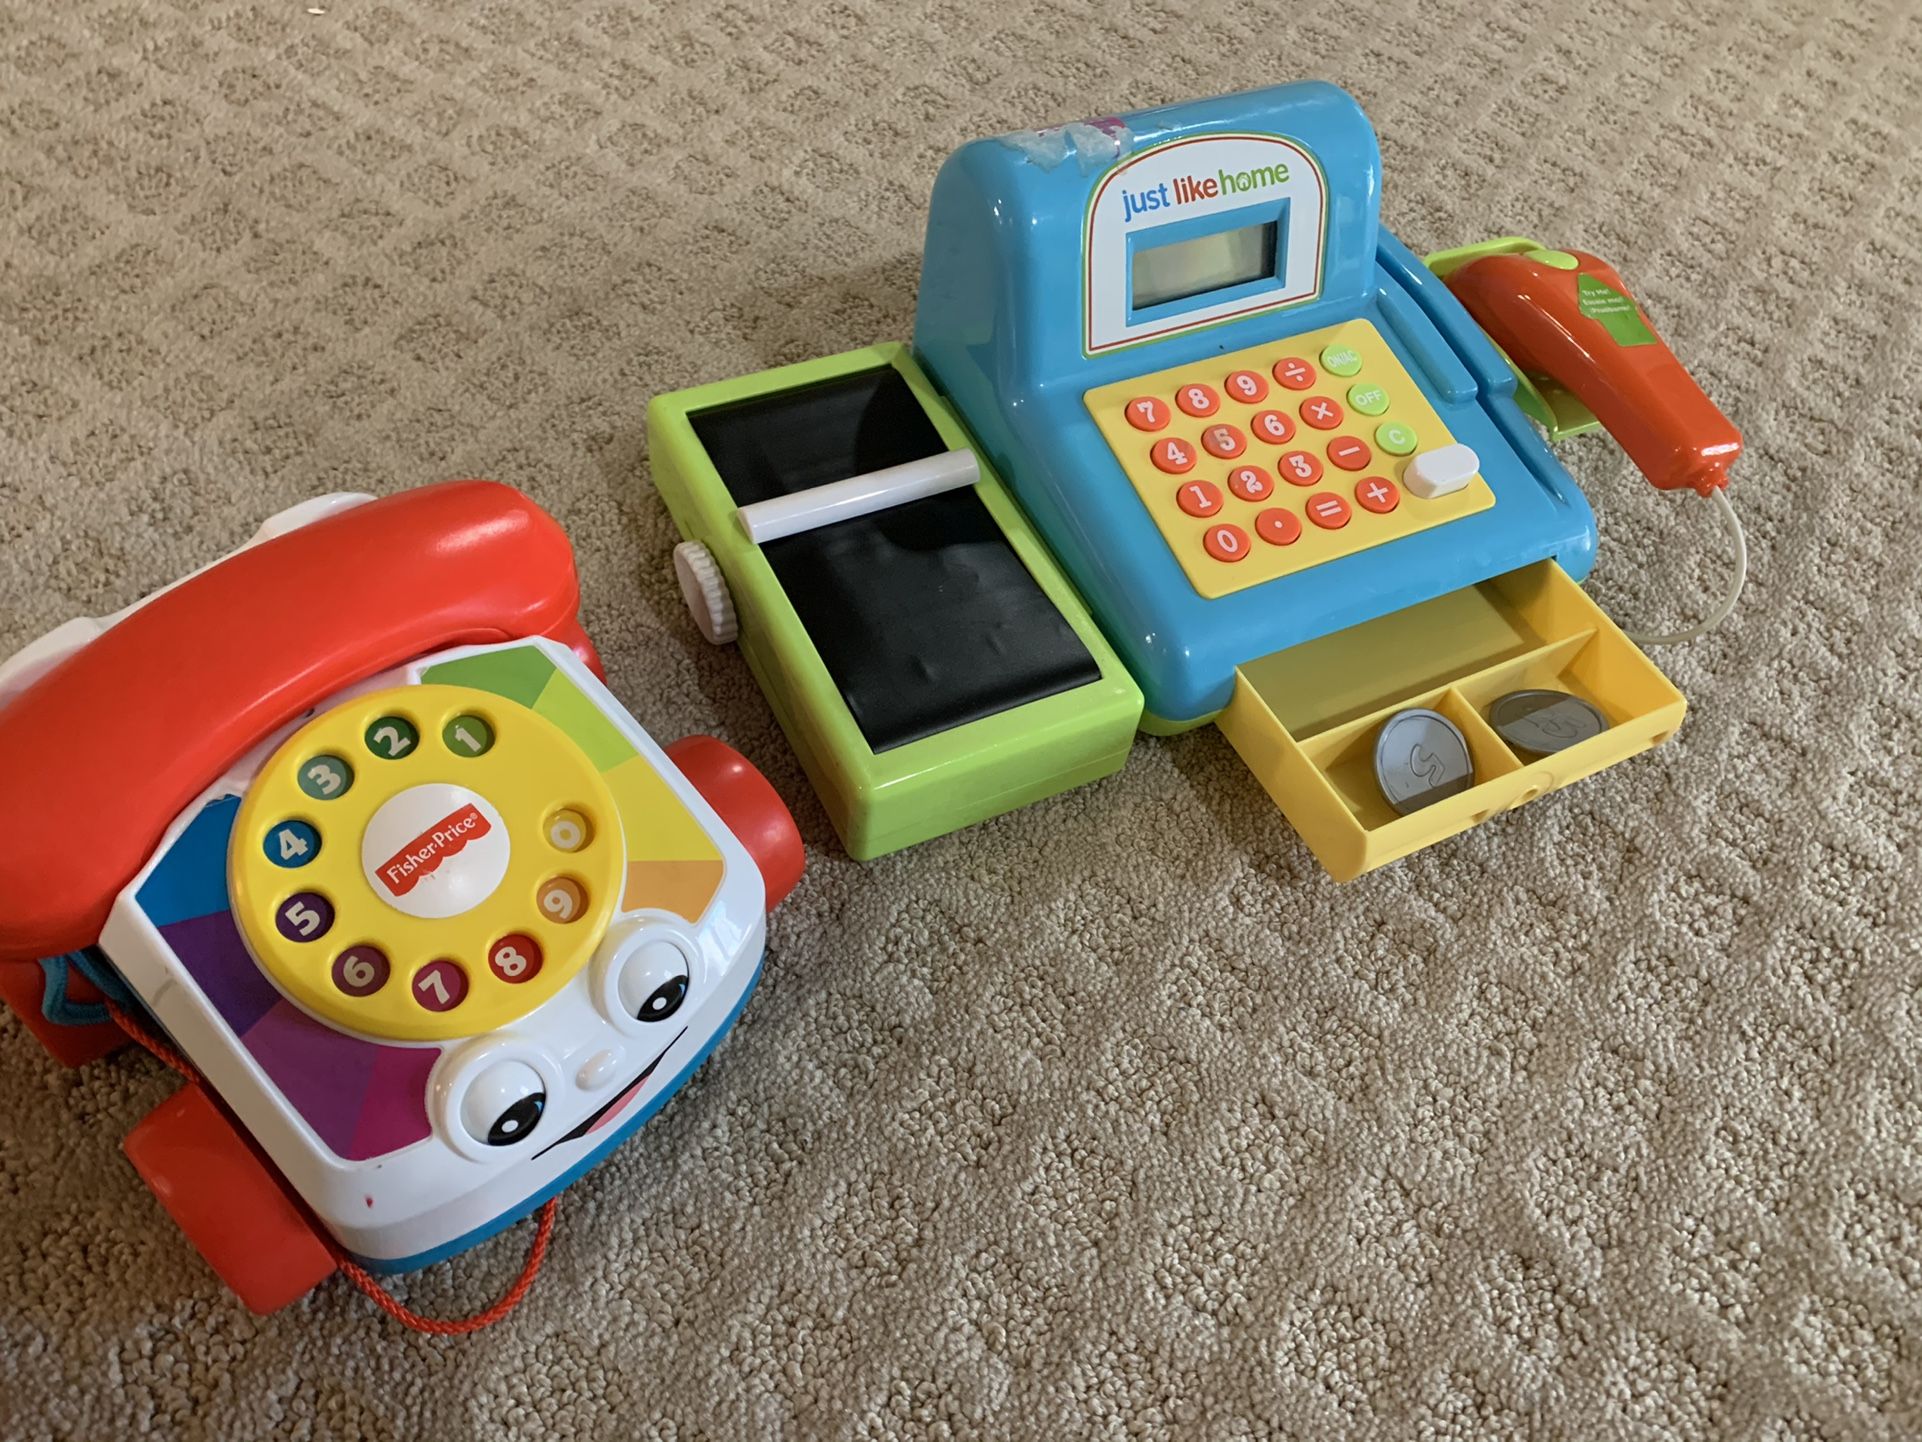 Toy Phone + Chashier Machine